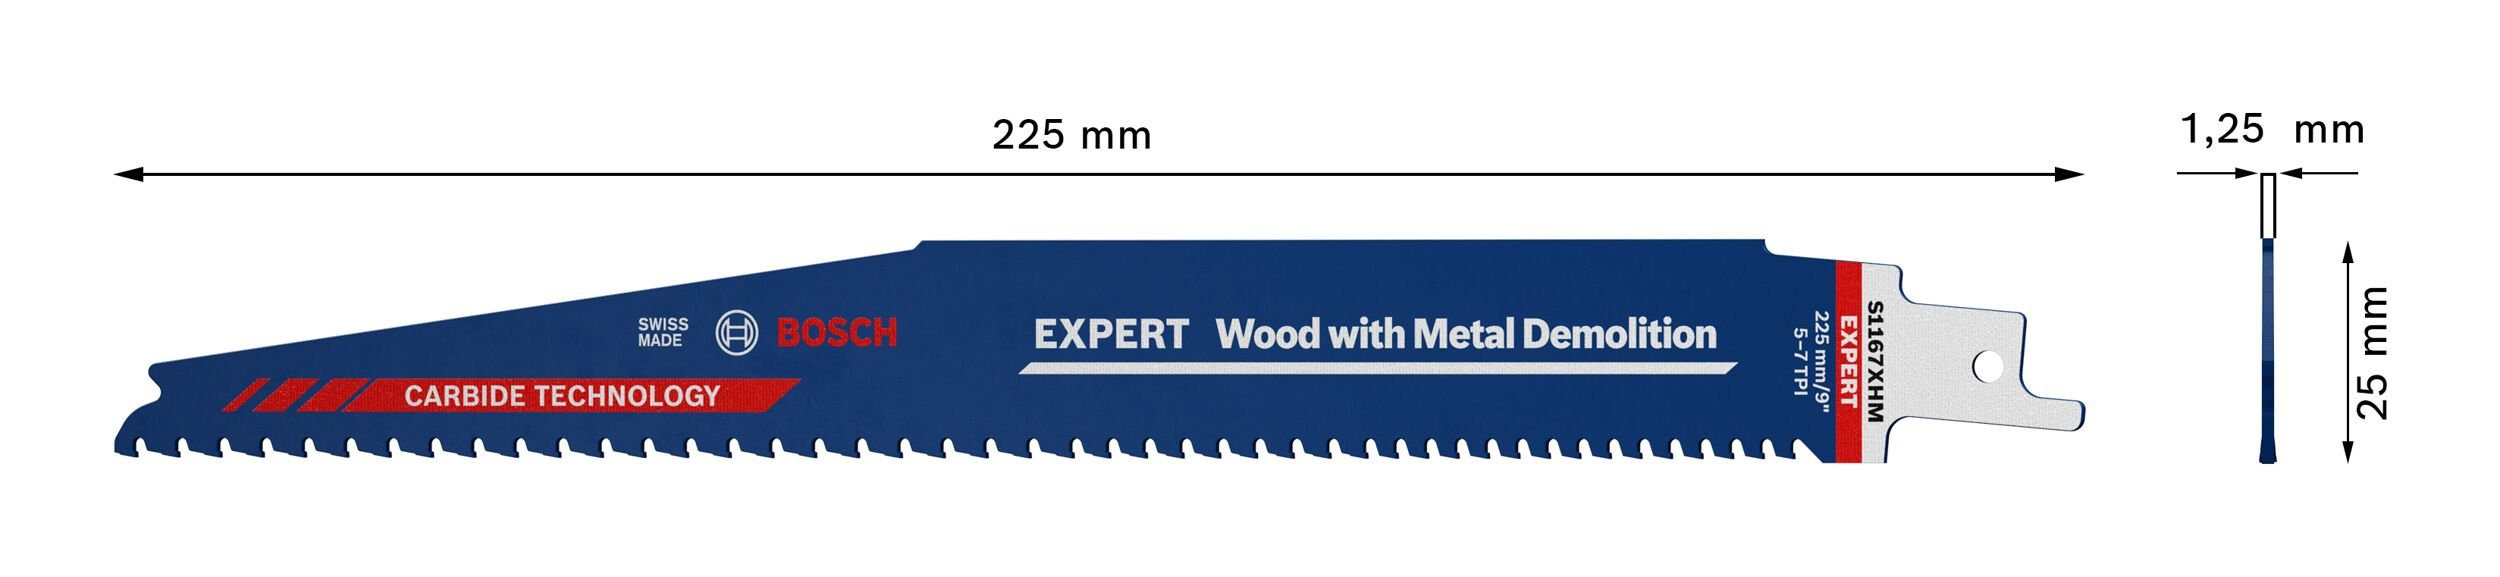 Demolition, Metal BOSCH with Säbelsägeblatt Endurance XHM Expert and 1167 Expert Wood Metal S Demolition Wood for